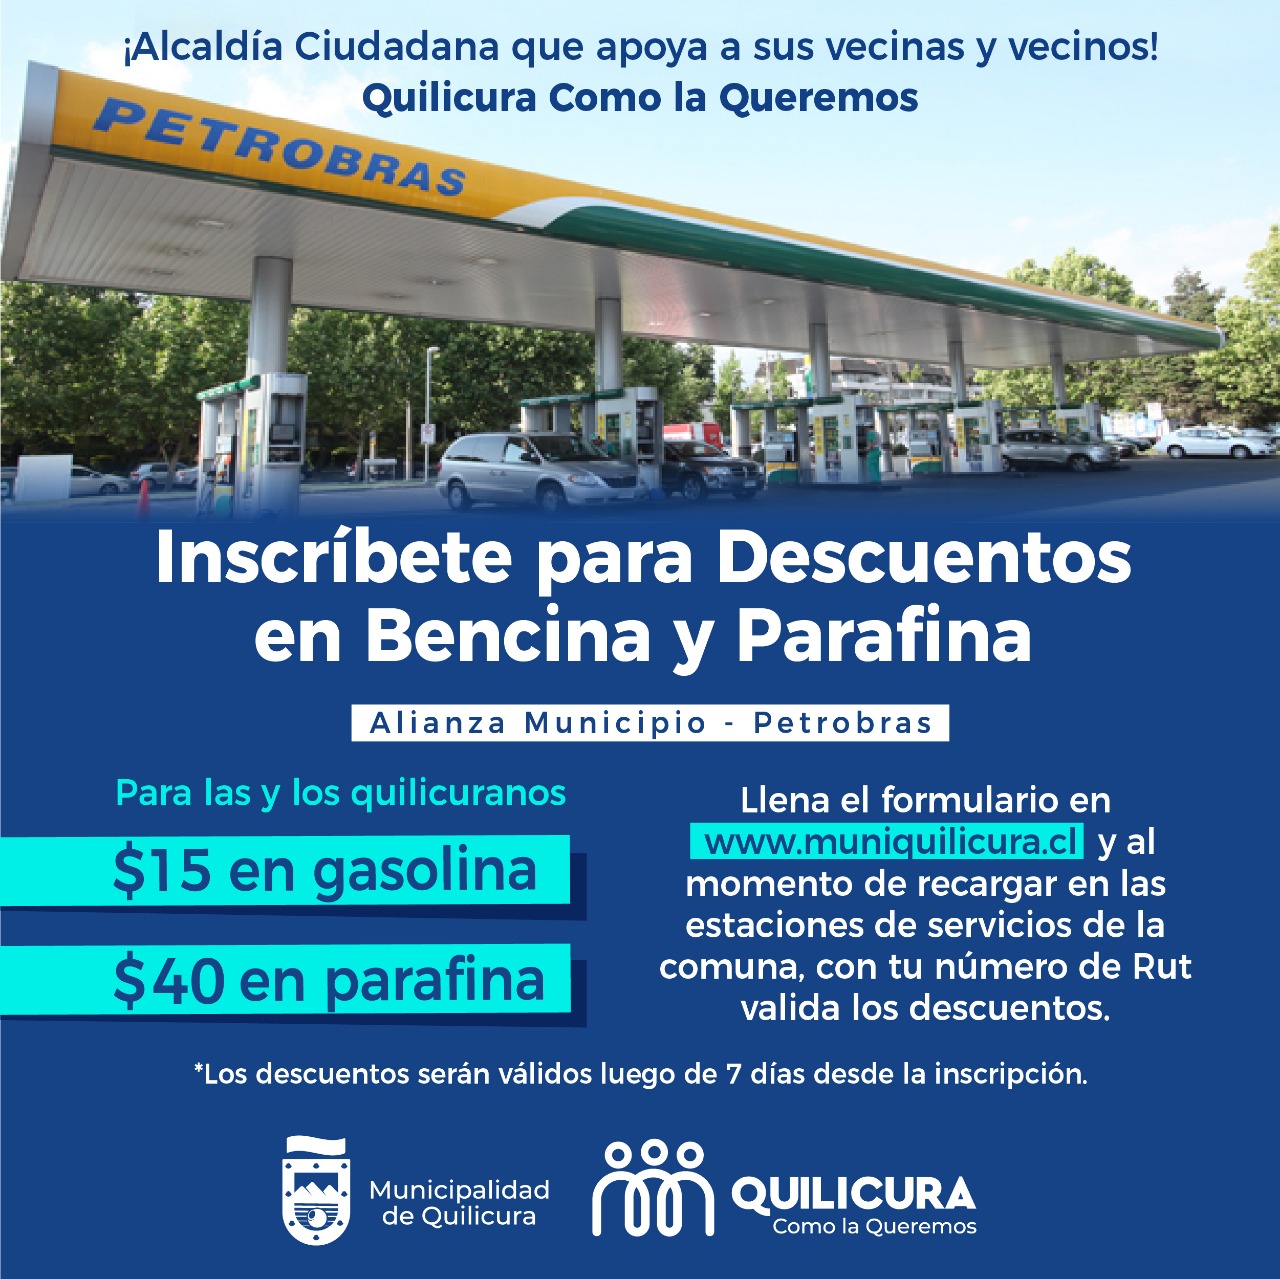 Descuento en Bencina y Parafina – Alianza Municipio y Petrobras